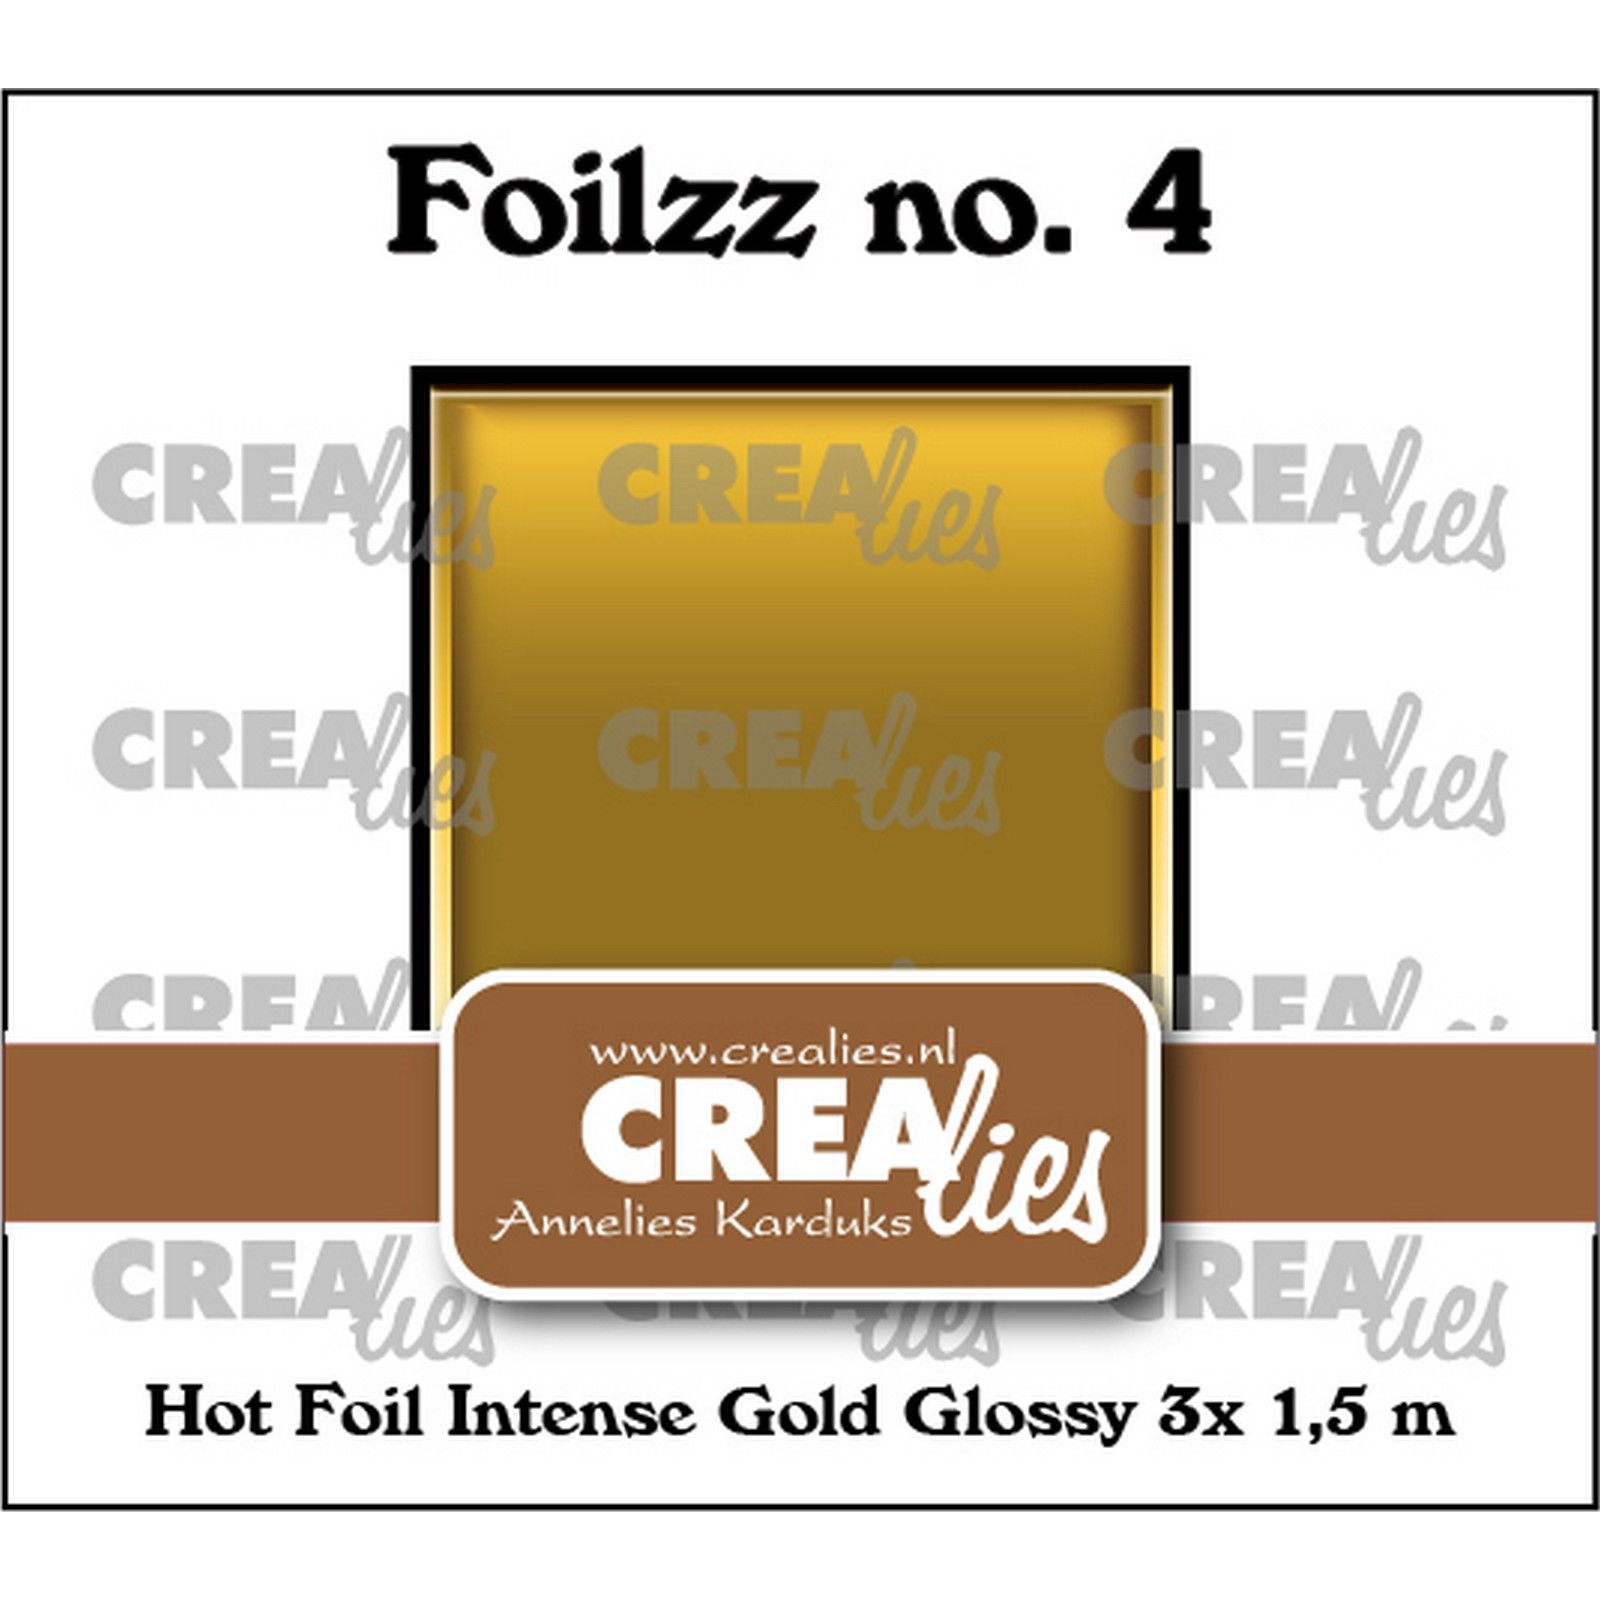 Crealies • Foilzz Hot Foil Intense Gold Glossy